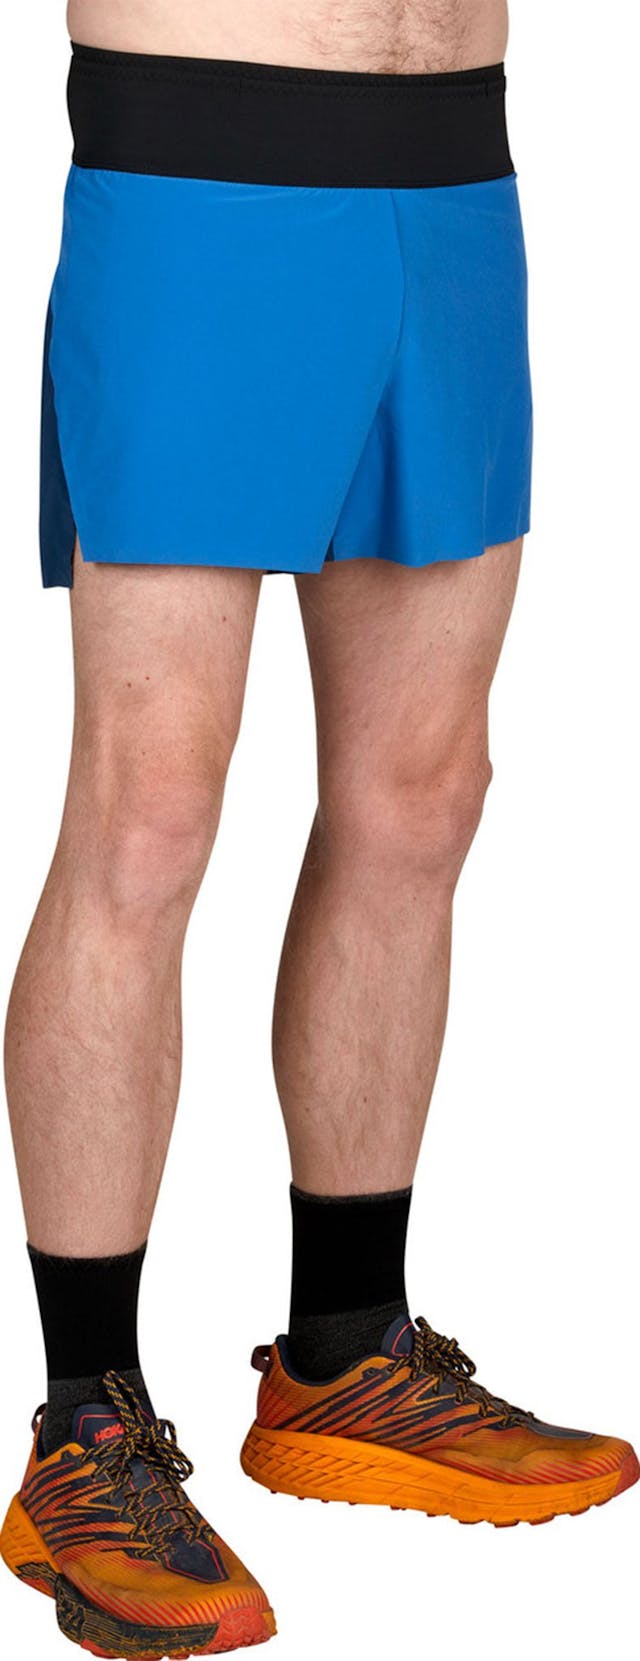 Product image for Velum Shorts - Men's